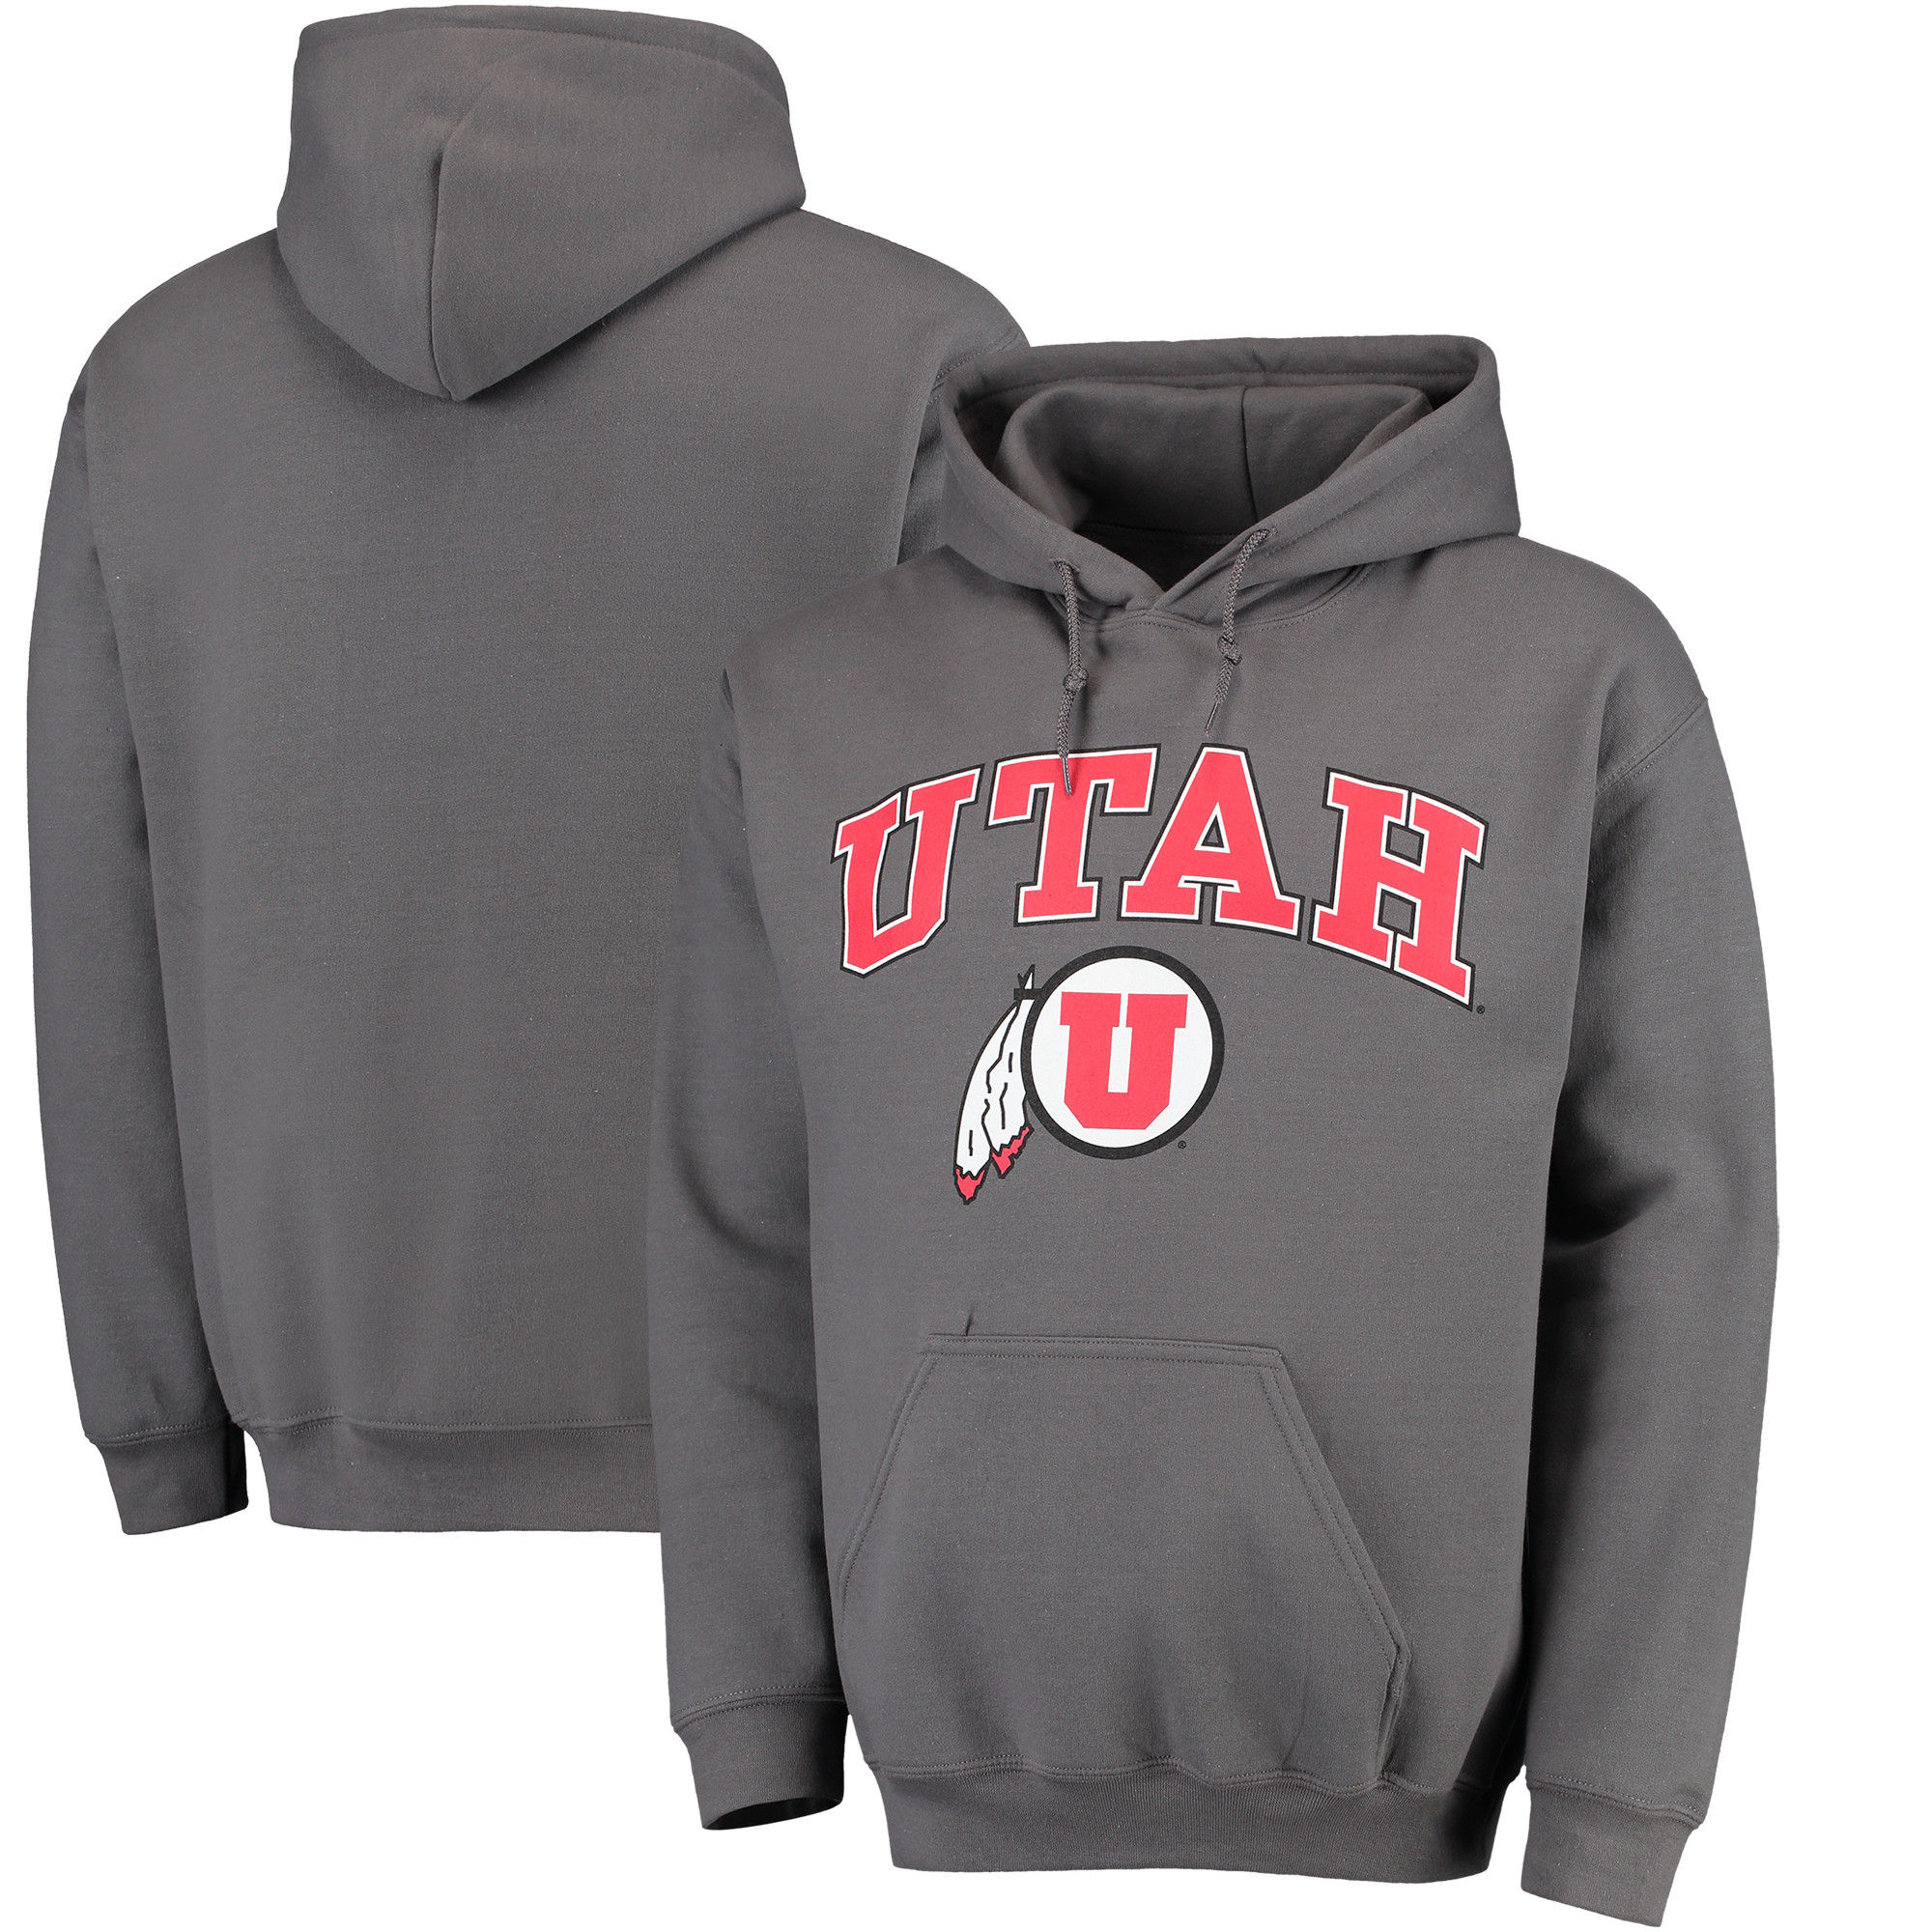 Utah Utes Charcoal Campus Pullover Hoodie